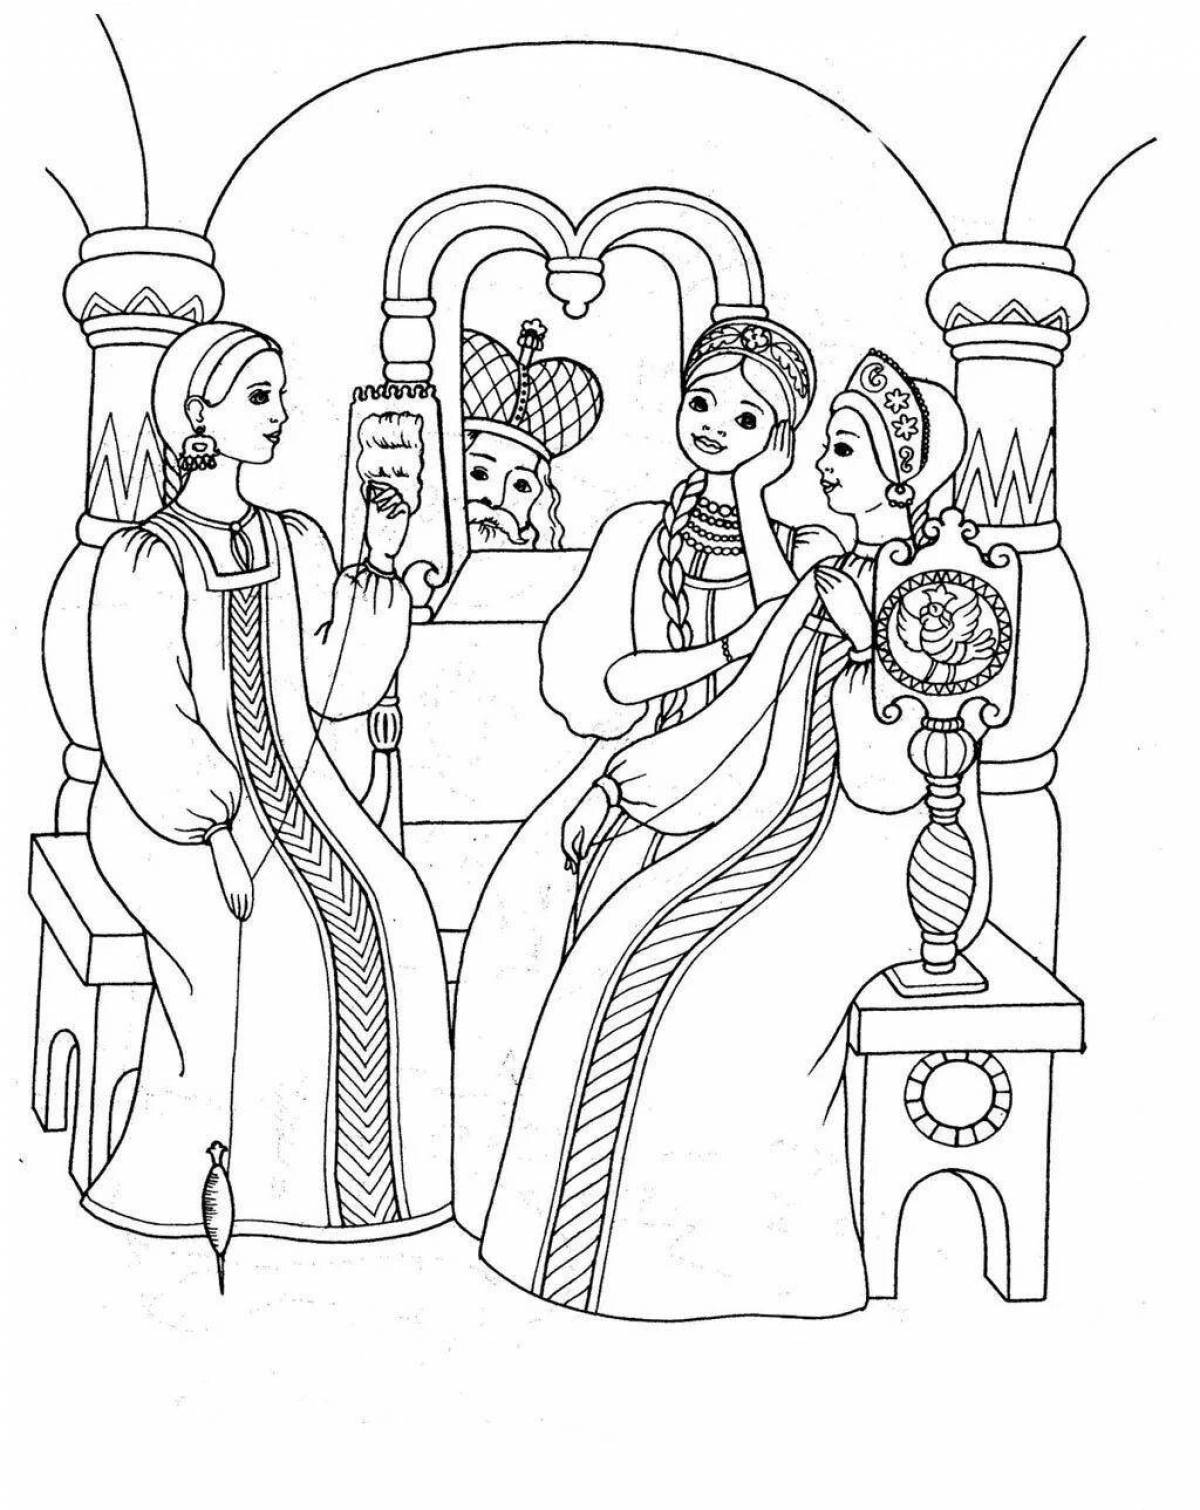 Иллюстрация к сказке о царе салтане #1